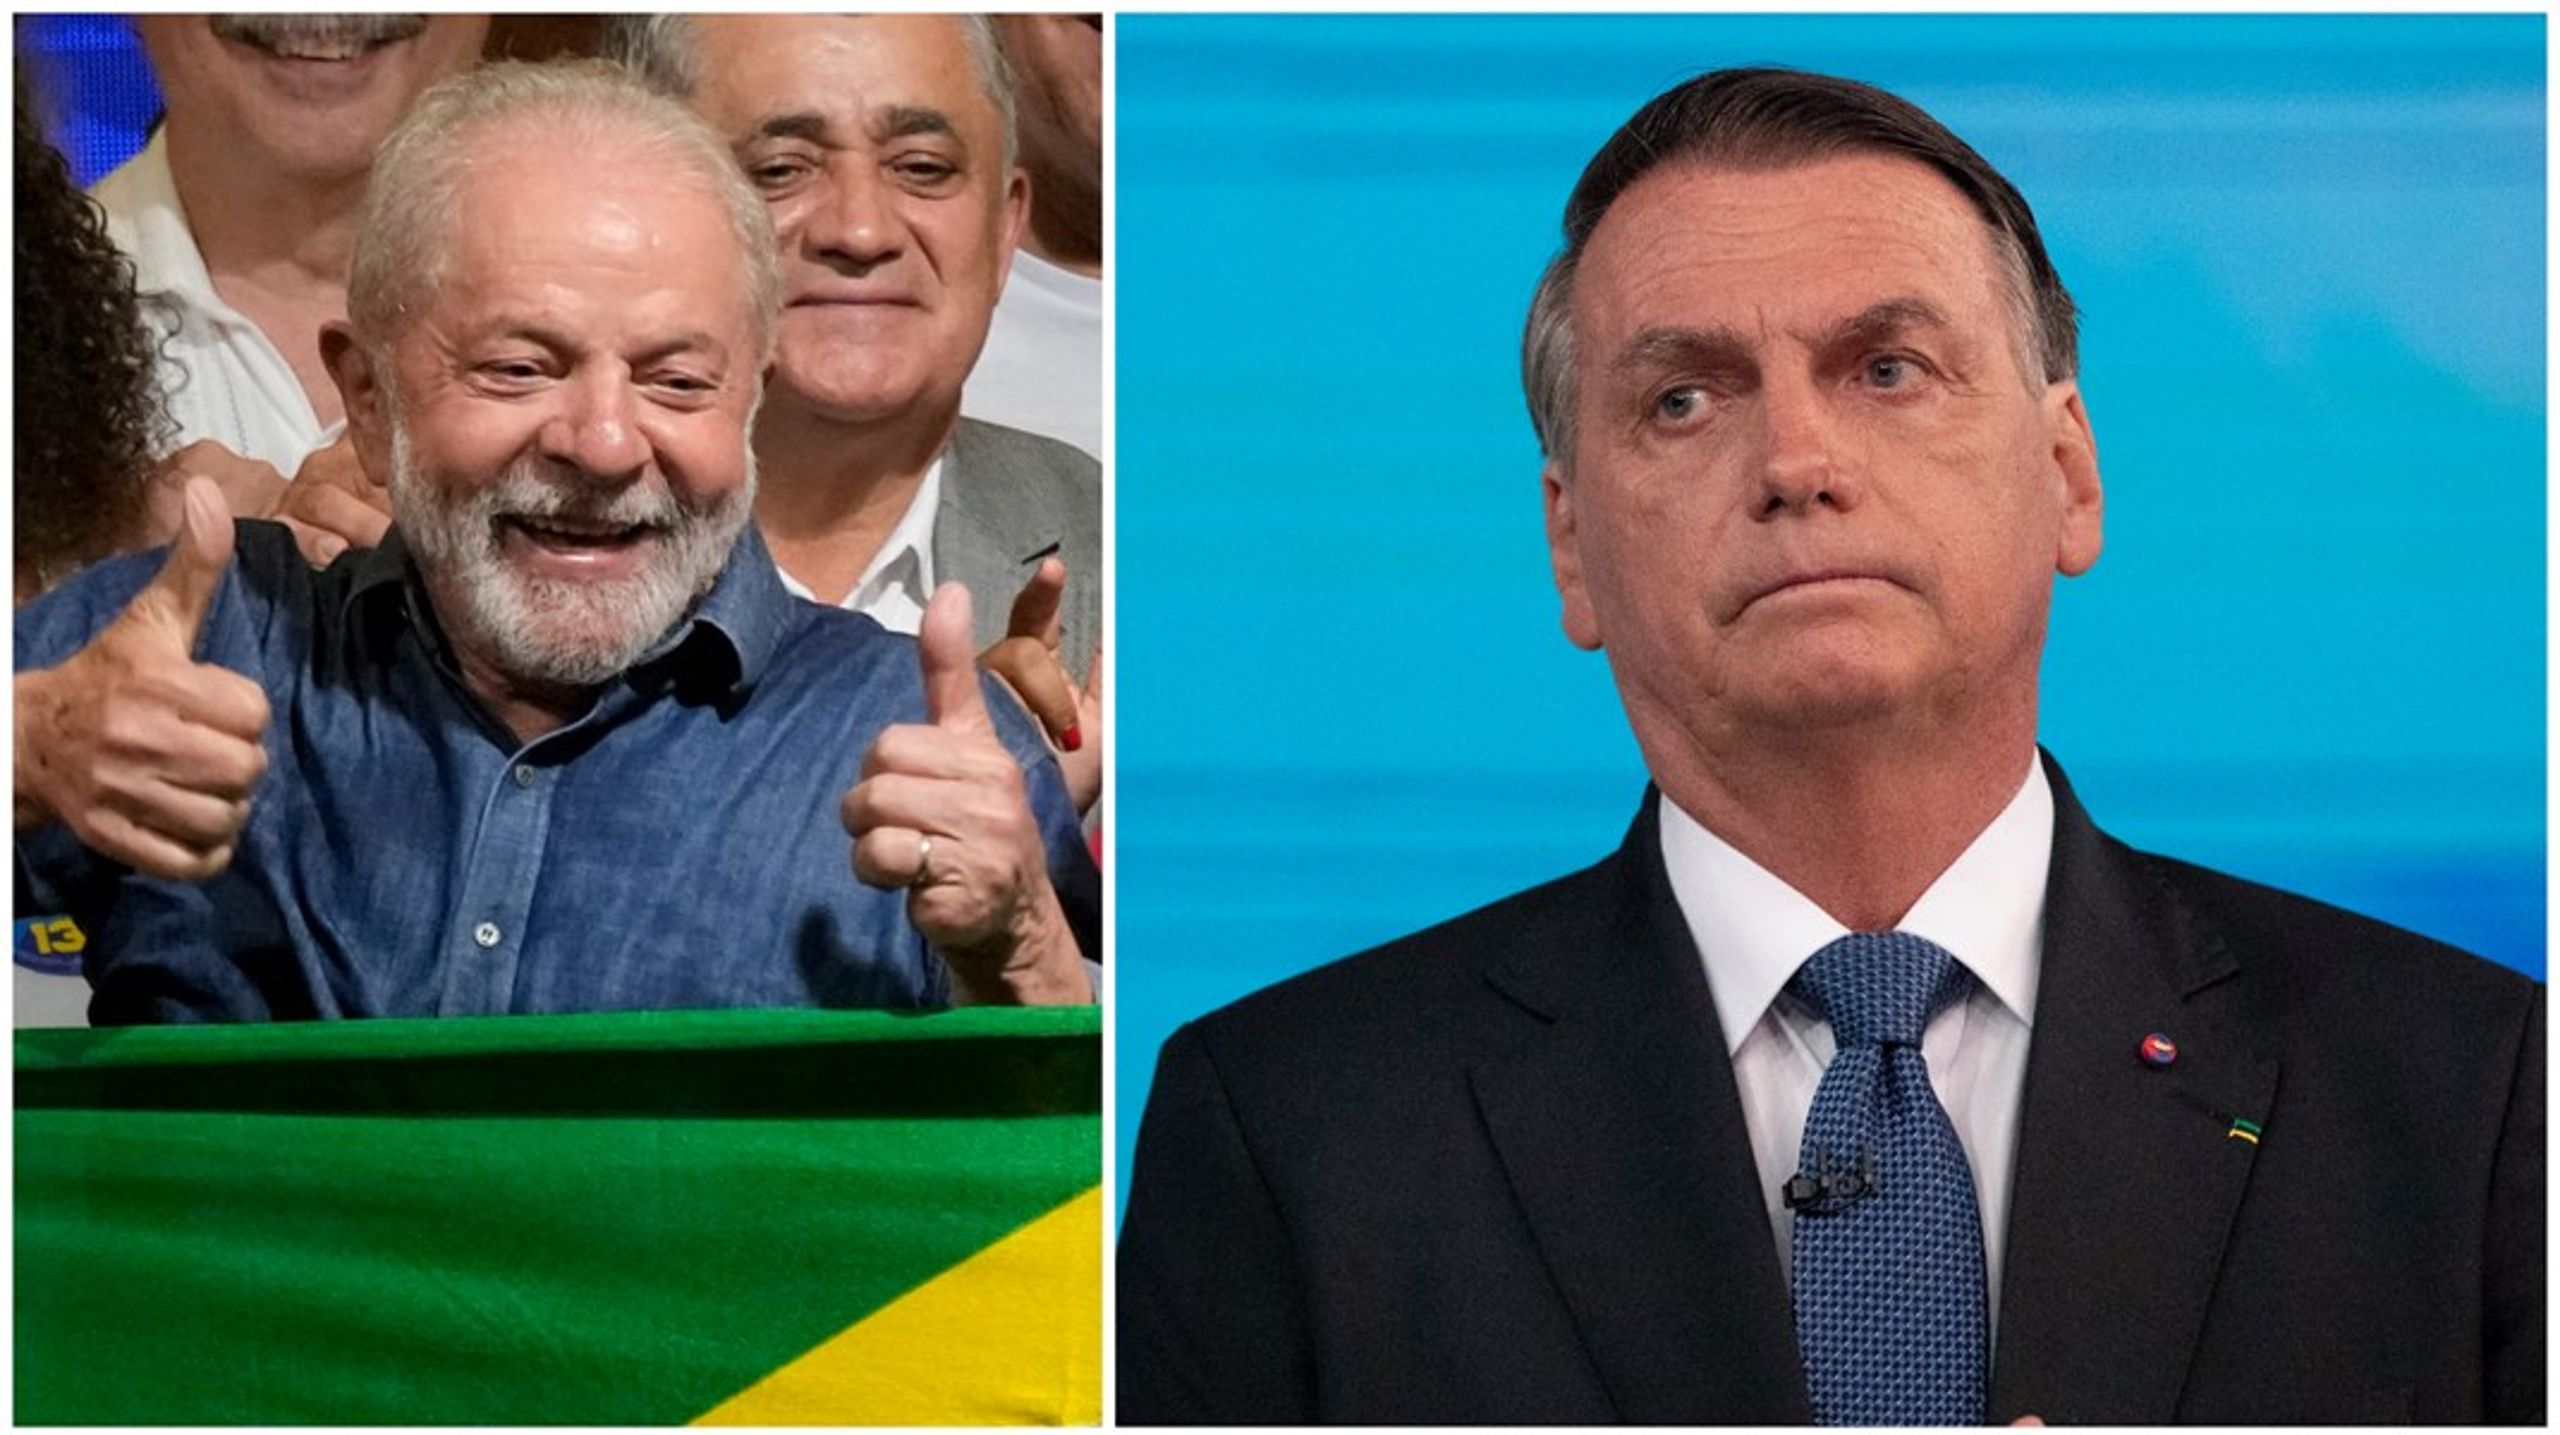 ”Mardrömmen verkar äntligen ta slut.” löd kommentaren från en miljöorganisation när det stod klart att Luiz Inácio Lula da Silva segrat över Brasilisens&nbsp;sittande presidenten Jair Bolsonaro.&nbsp;